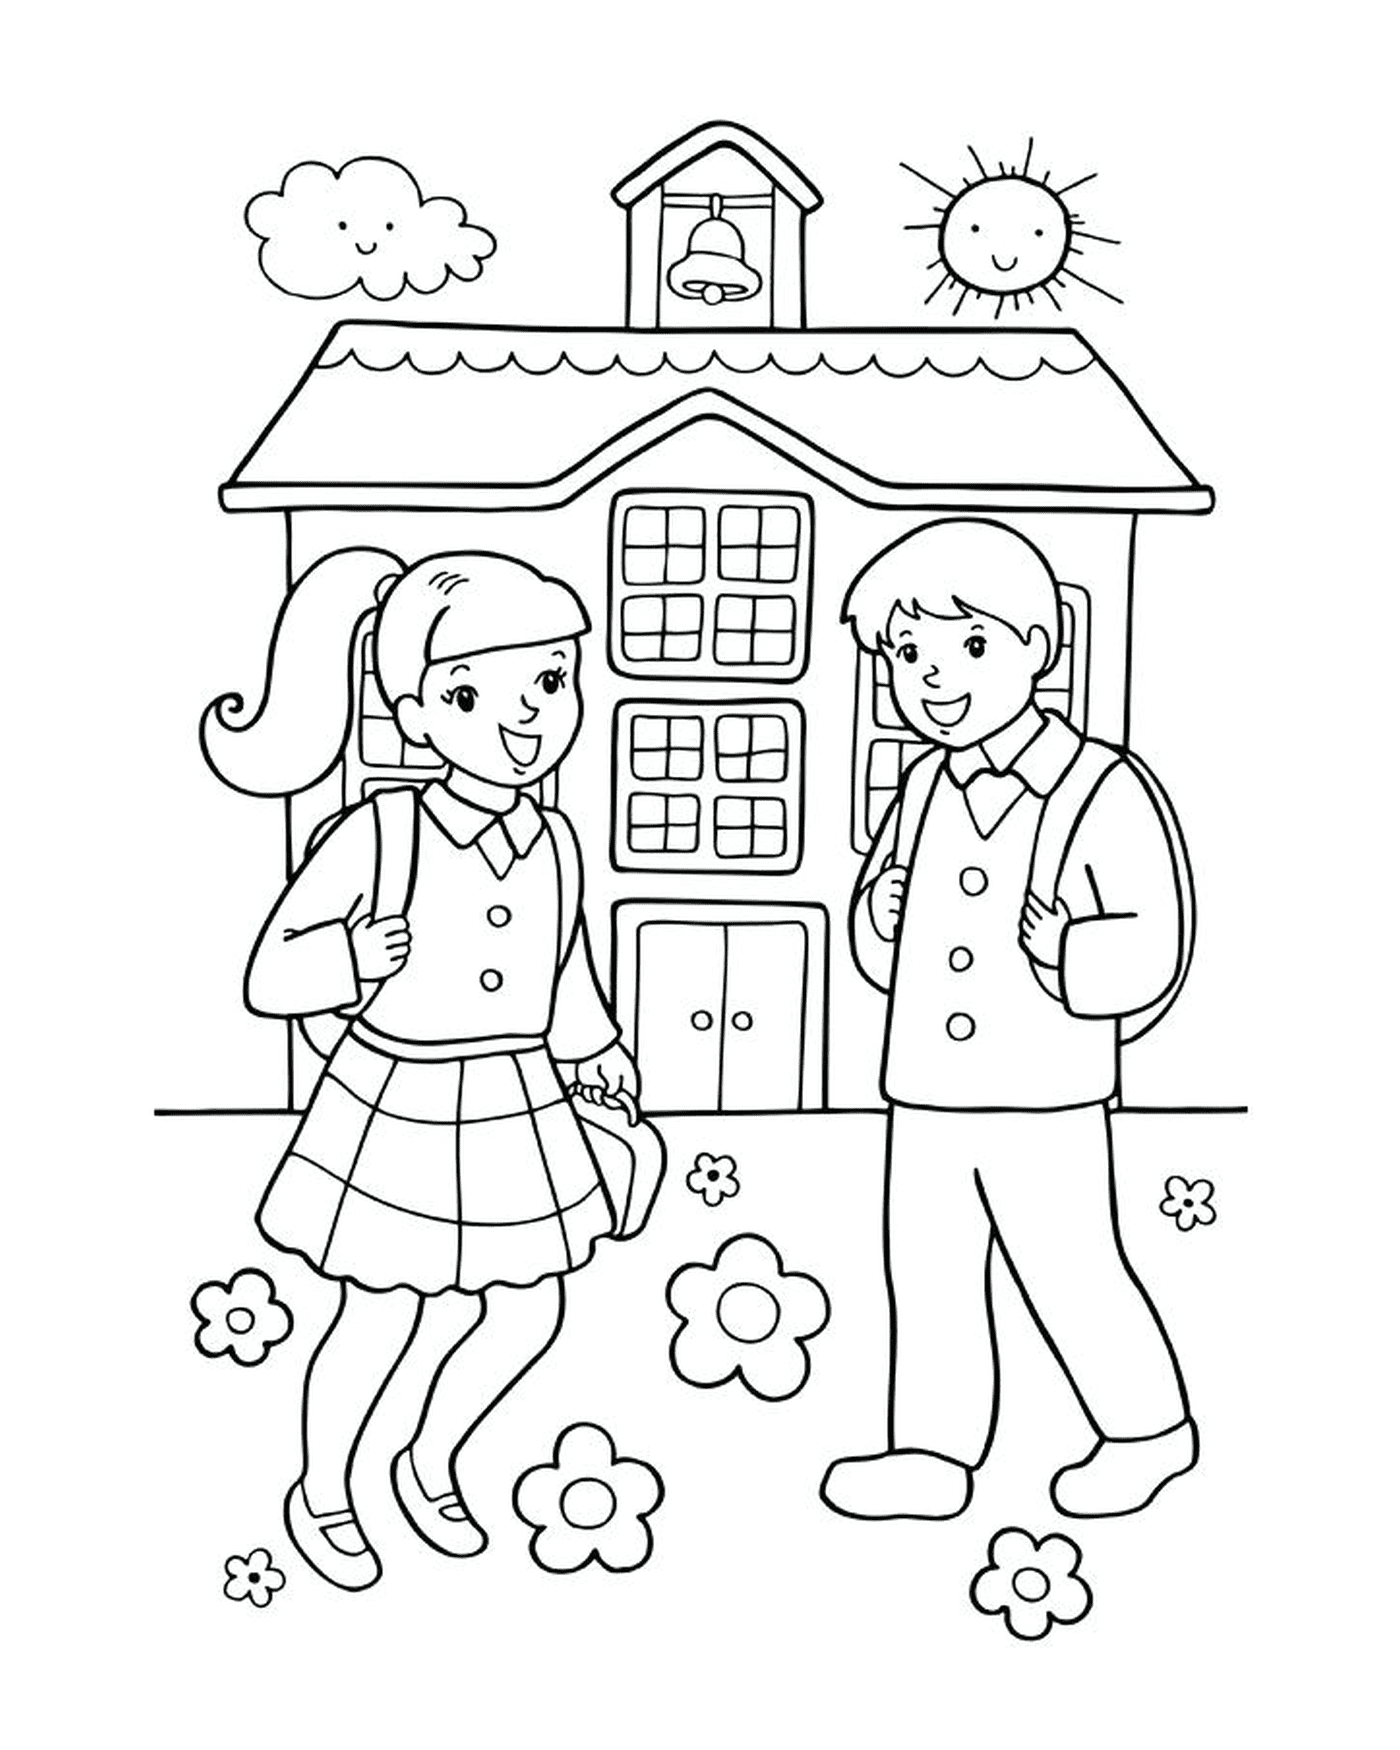  Uma menina e um menino de volta à escola 